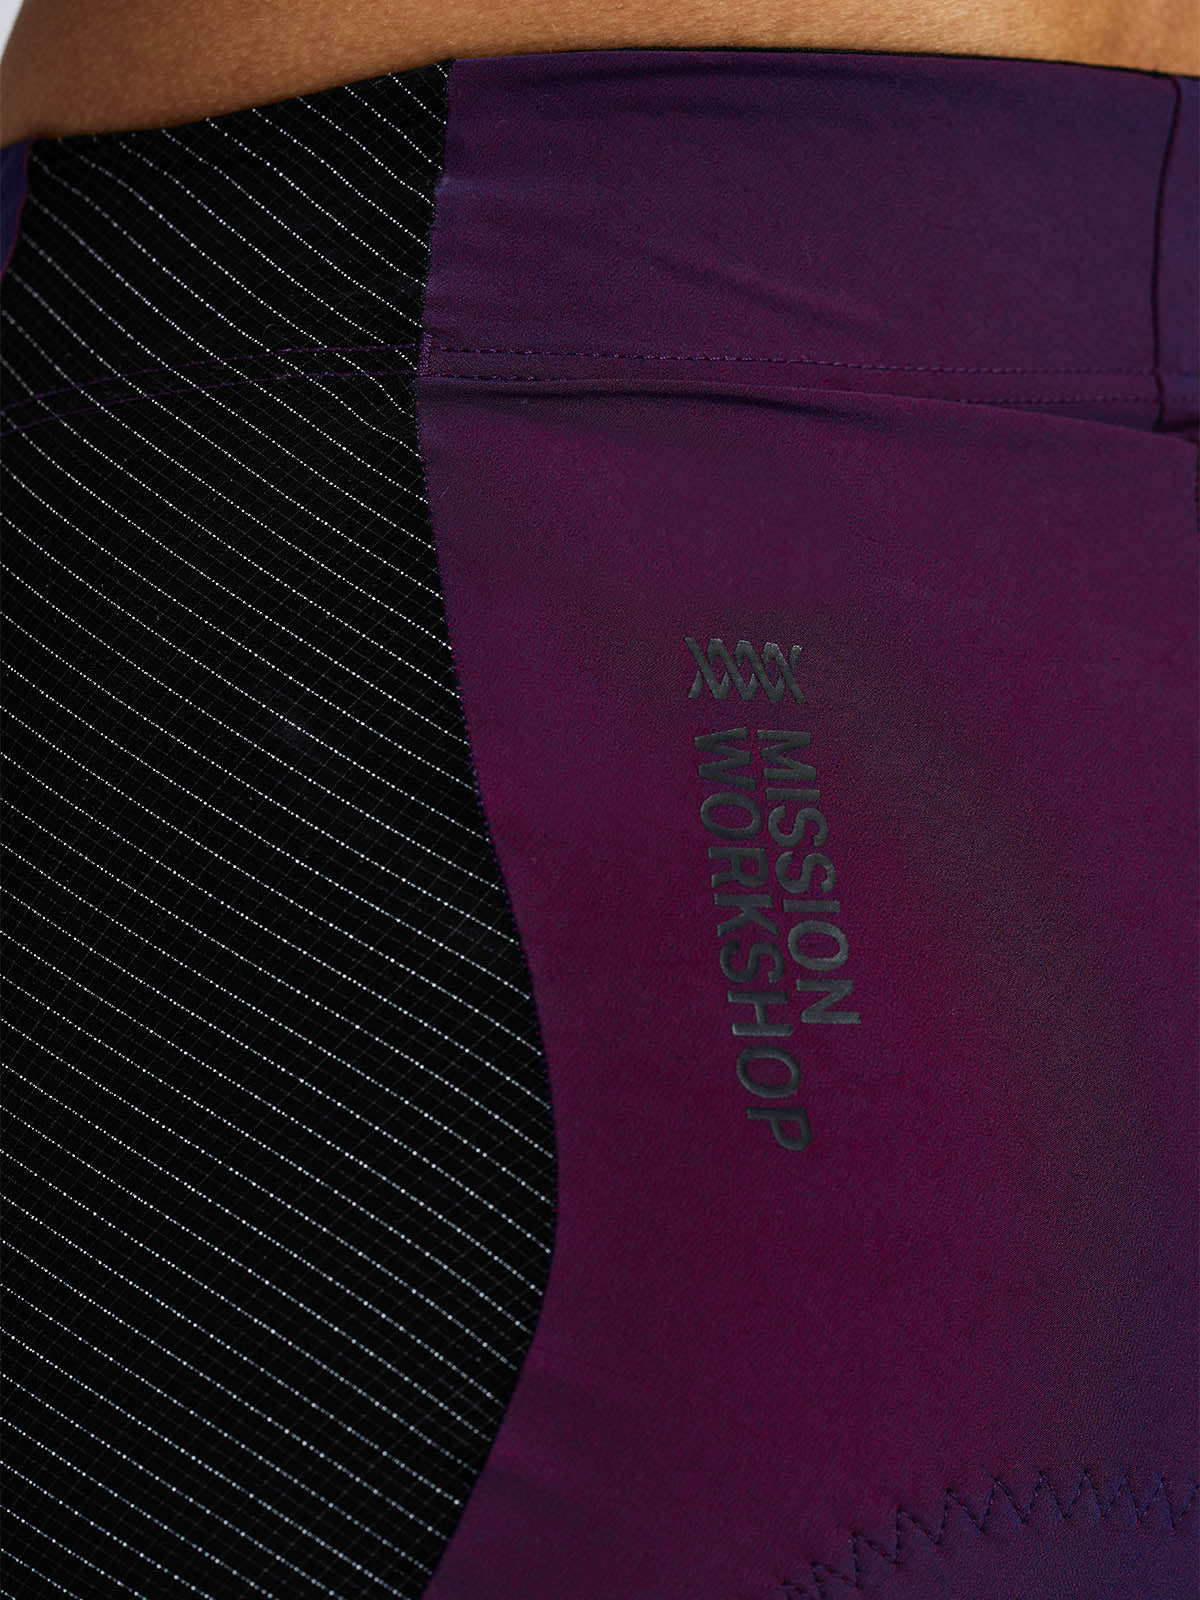 Mission Pro Short Women's by Mission Workshop - Weerbestendige tassen & technische kleding - San Francisco & Los Angeles - Gemaakt om te doorstaan - Voor altijd gegarandeerd